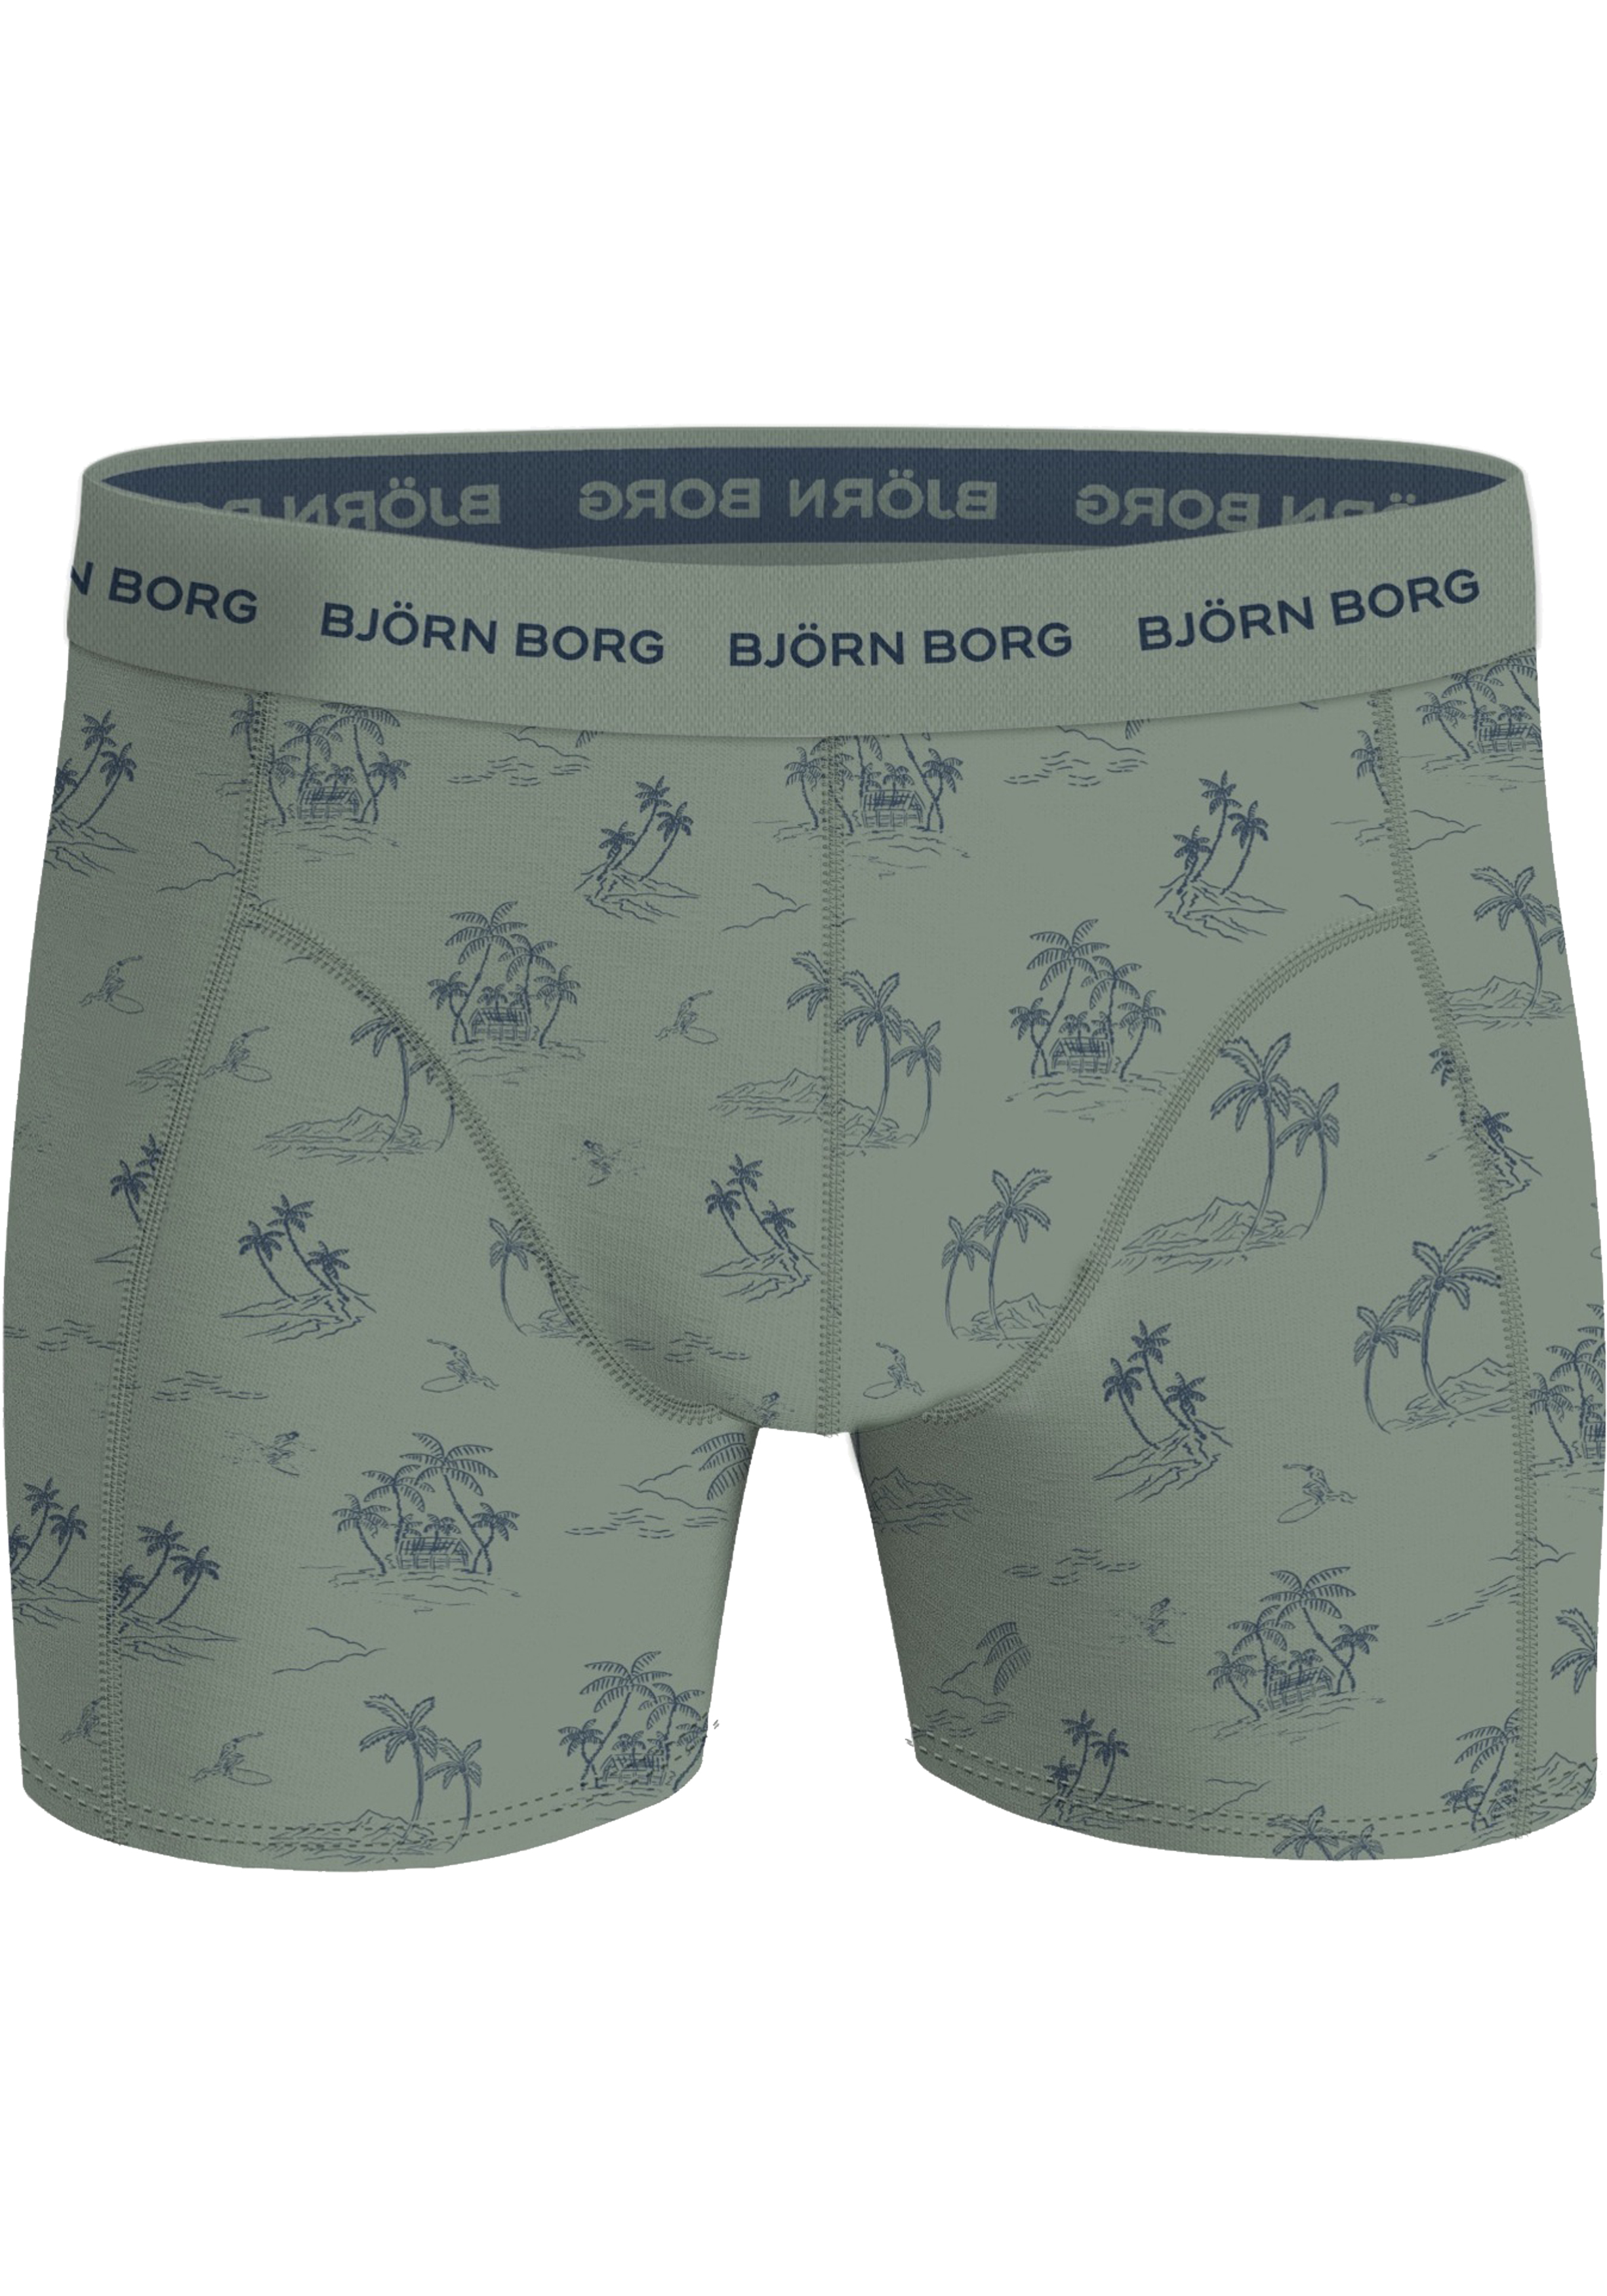 Bjorn Borg Cotton Stretch boxers, heren boxers normale lengte (1-pack), groen en blauw palmbomen dessin